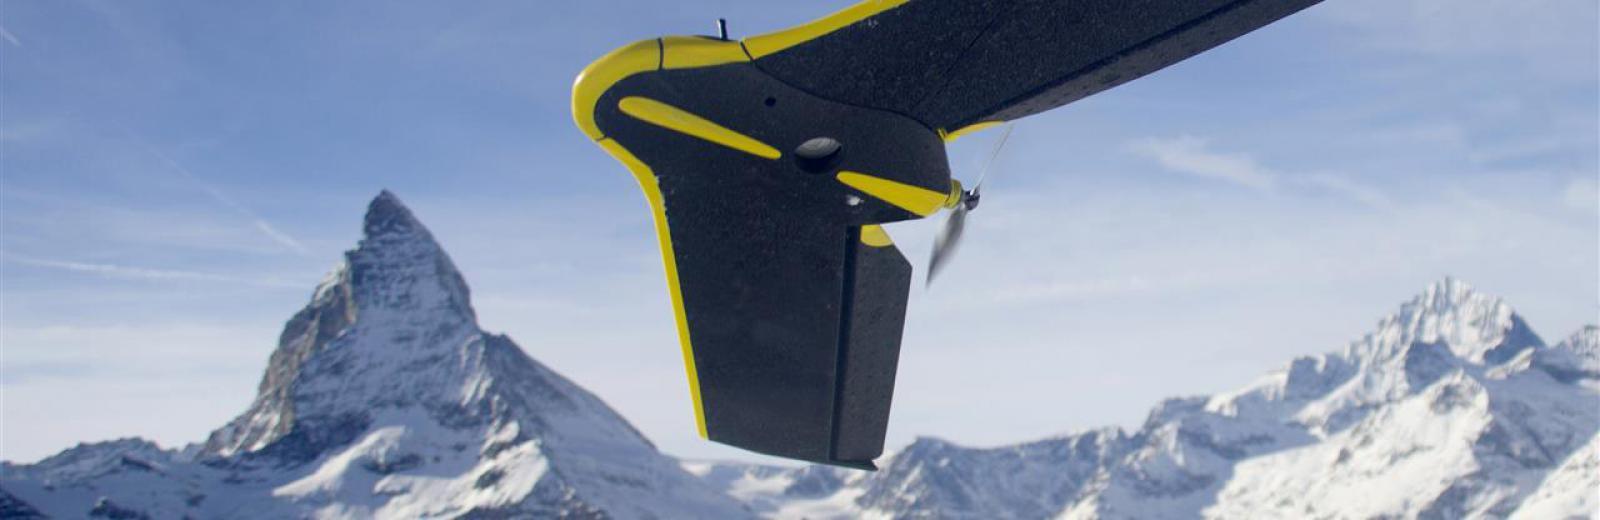 Swiss drone in front of Matterhorn